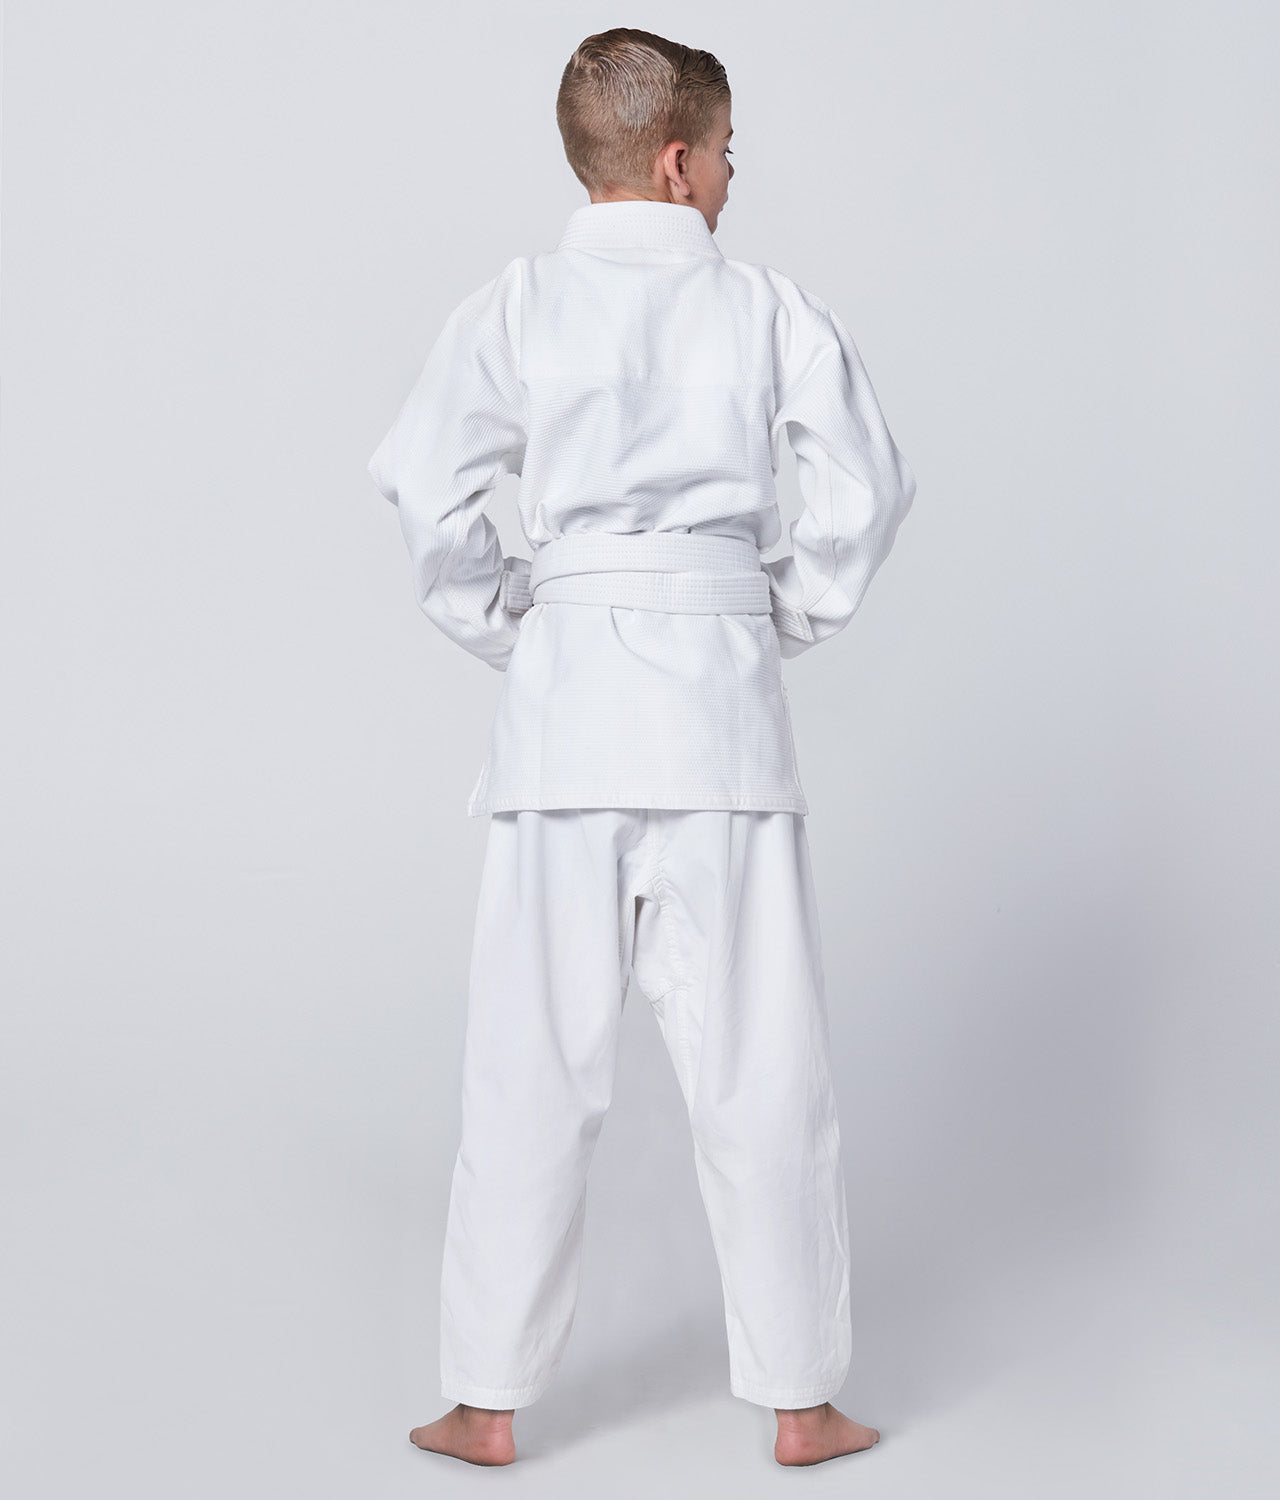 Elite Sports Kids' Essential White Brazilian Jiu Jitsu BJJ Gi Back View